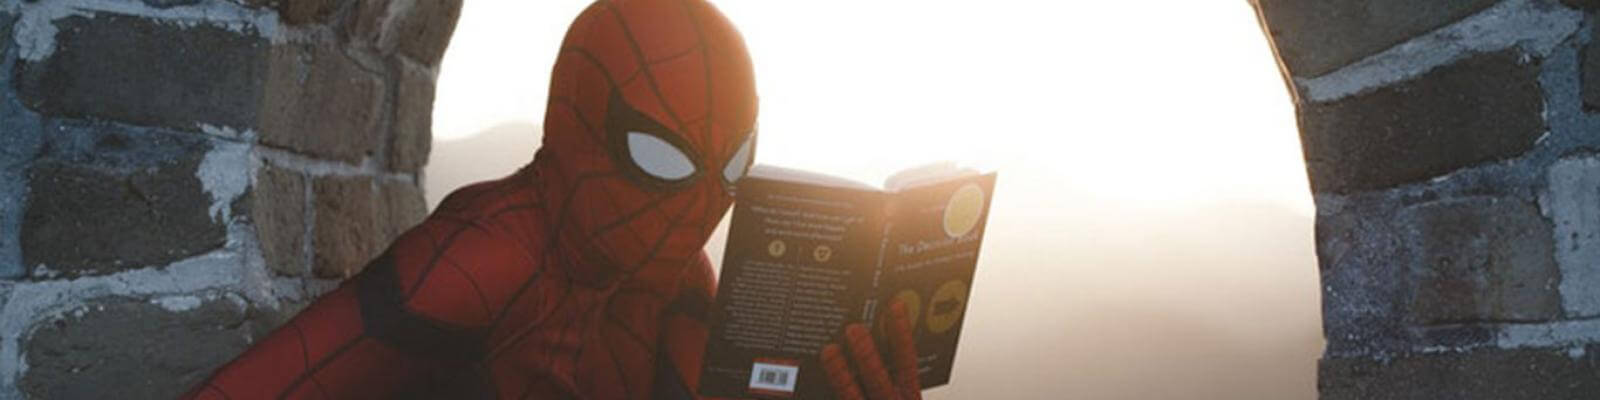 Spider-man-Study